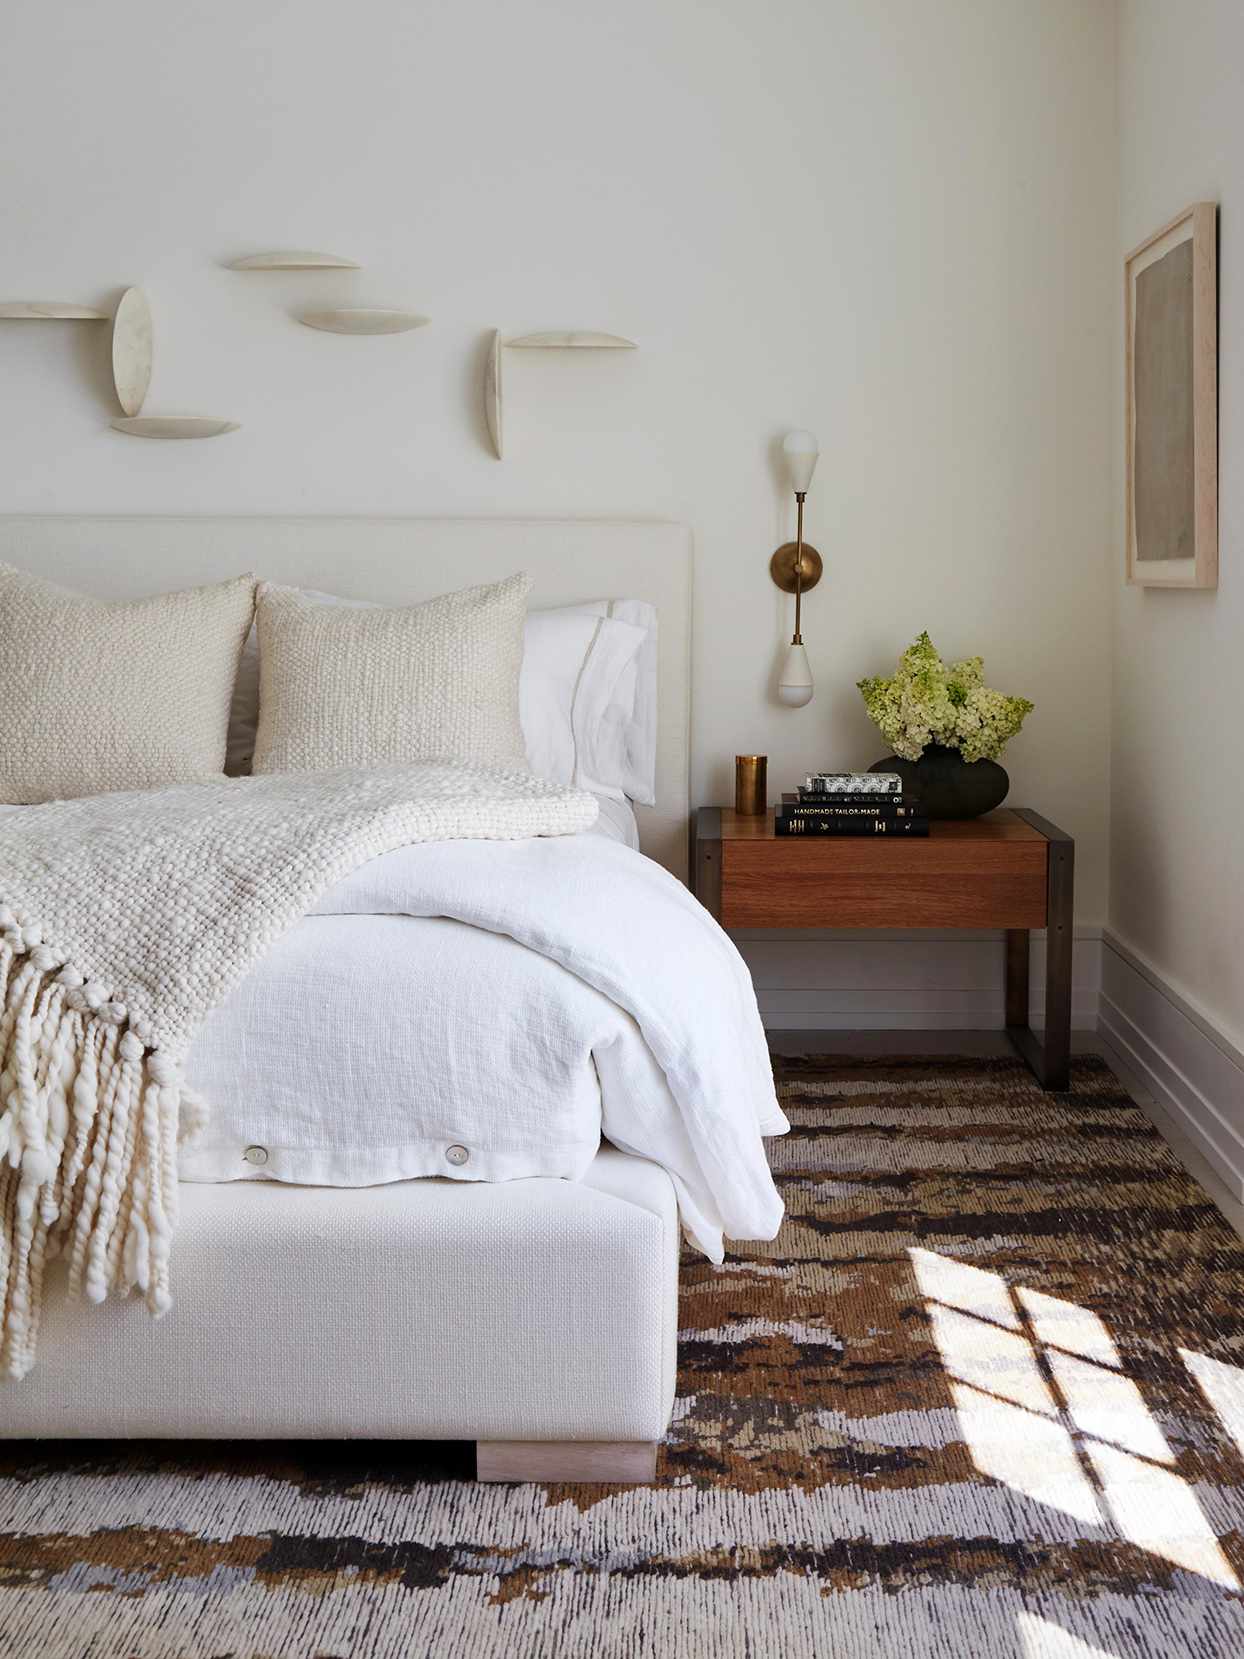 21 White Bedroom Ideas For A Serene, White Bedroom Headboards